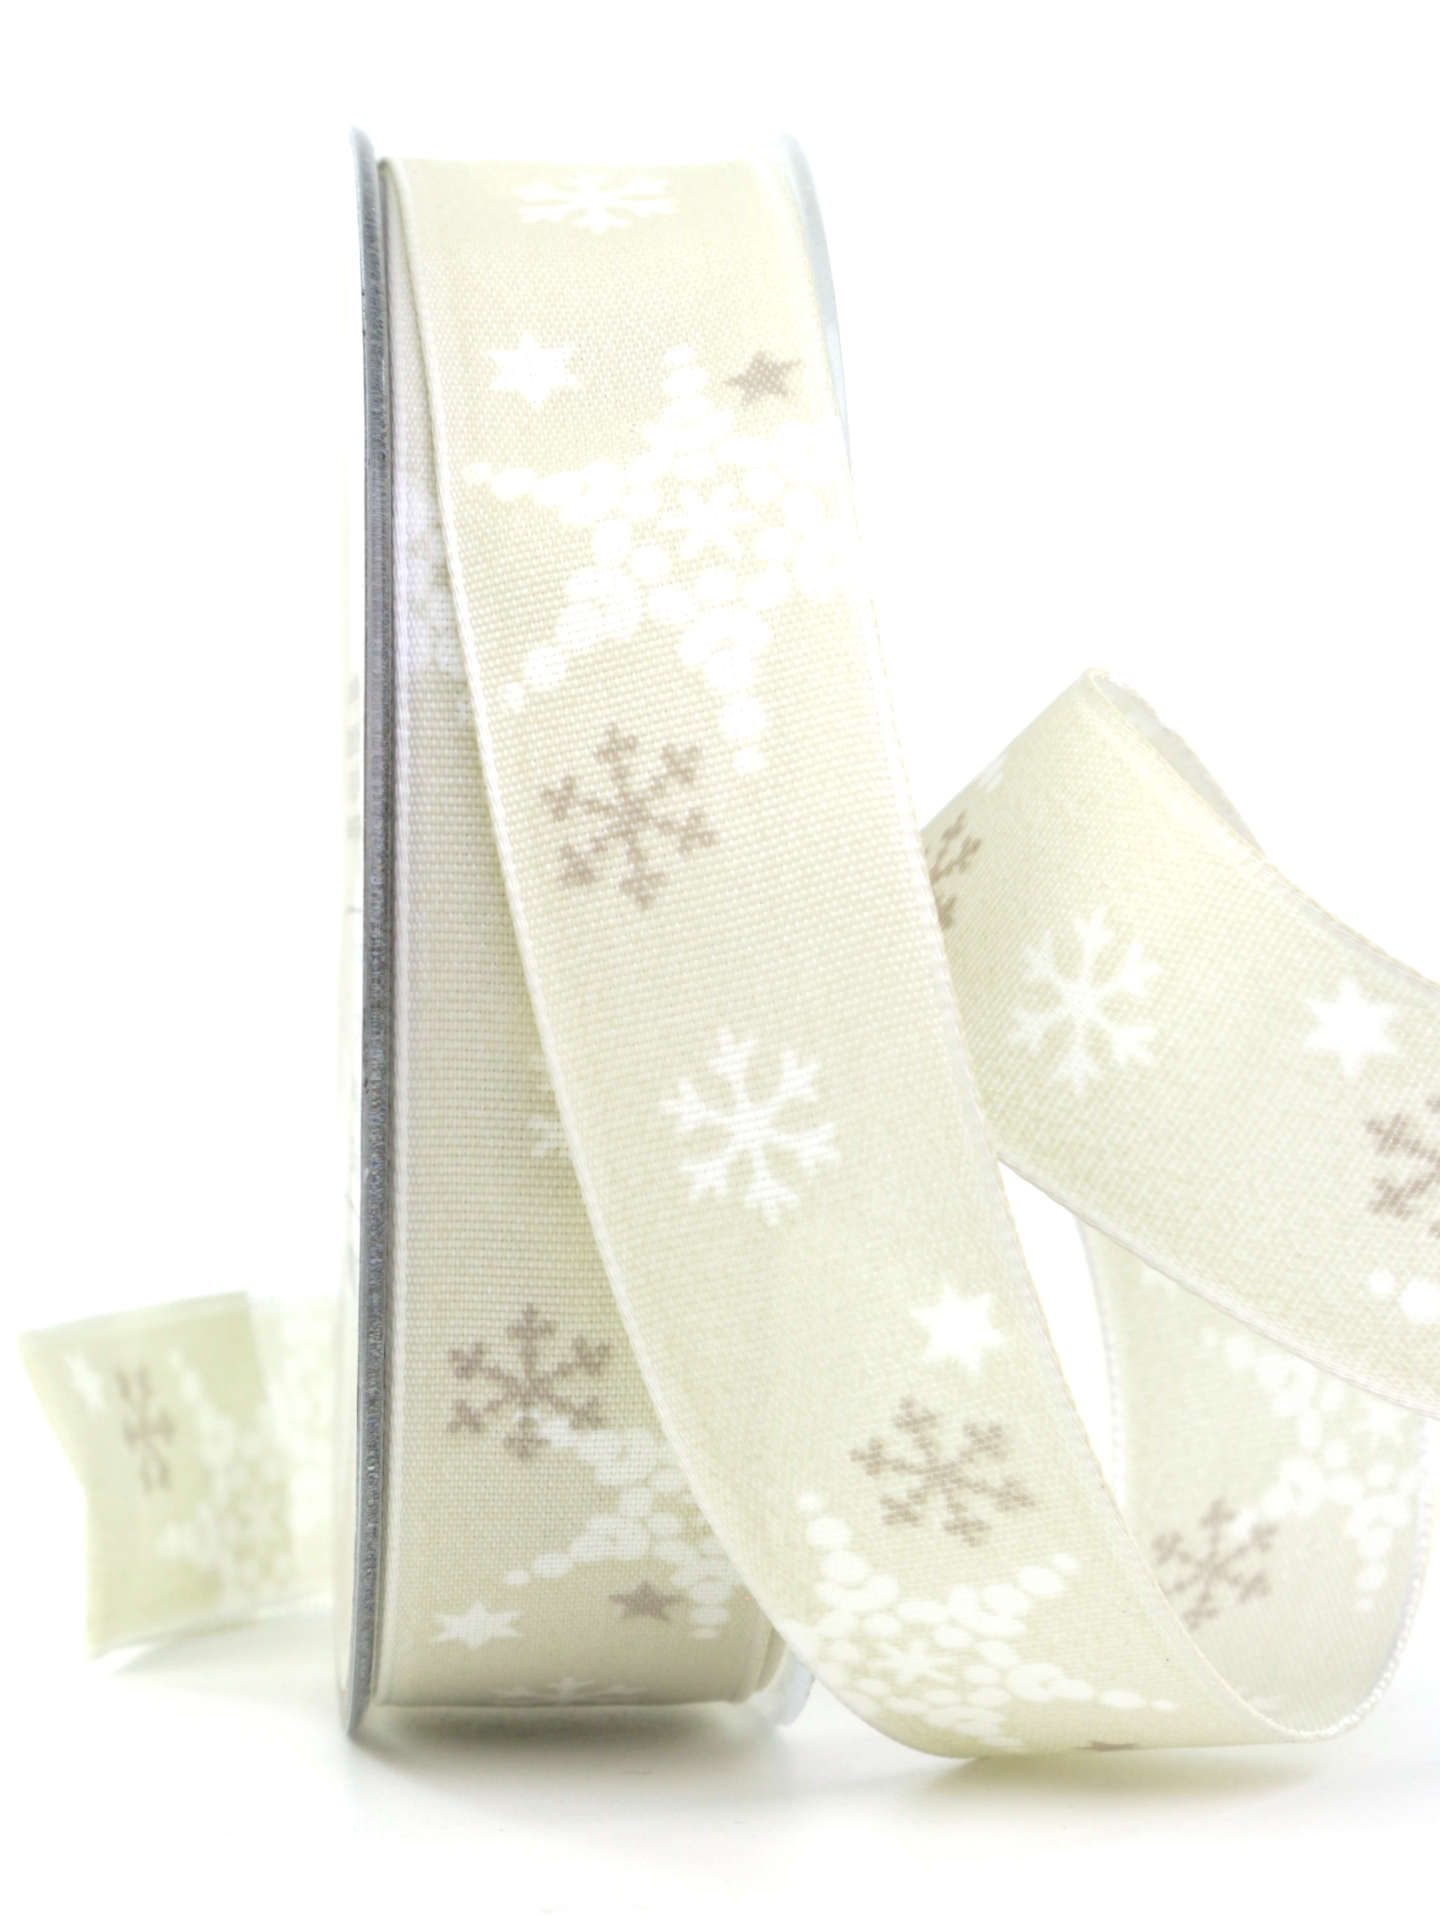 Dekoband mit Schneeflocken, sand, 25 mm breit - weihnachtsband, geschenkband-weihnachten-gemustert, geschenkband-weihnachten